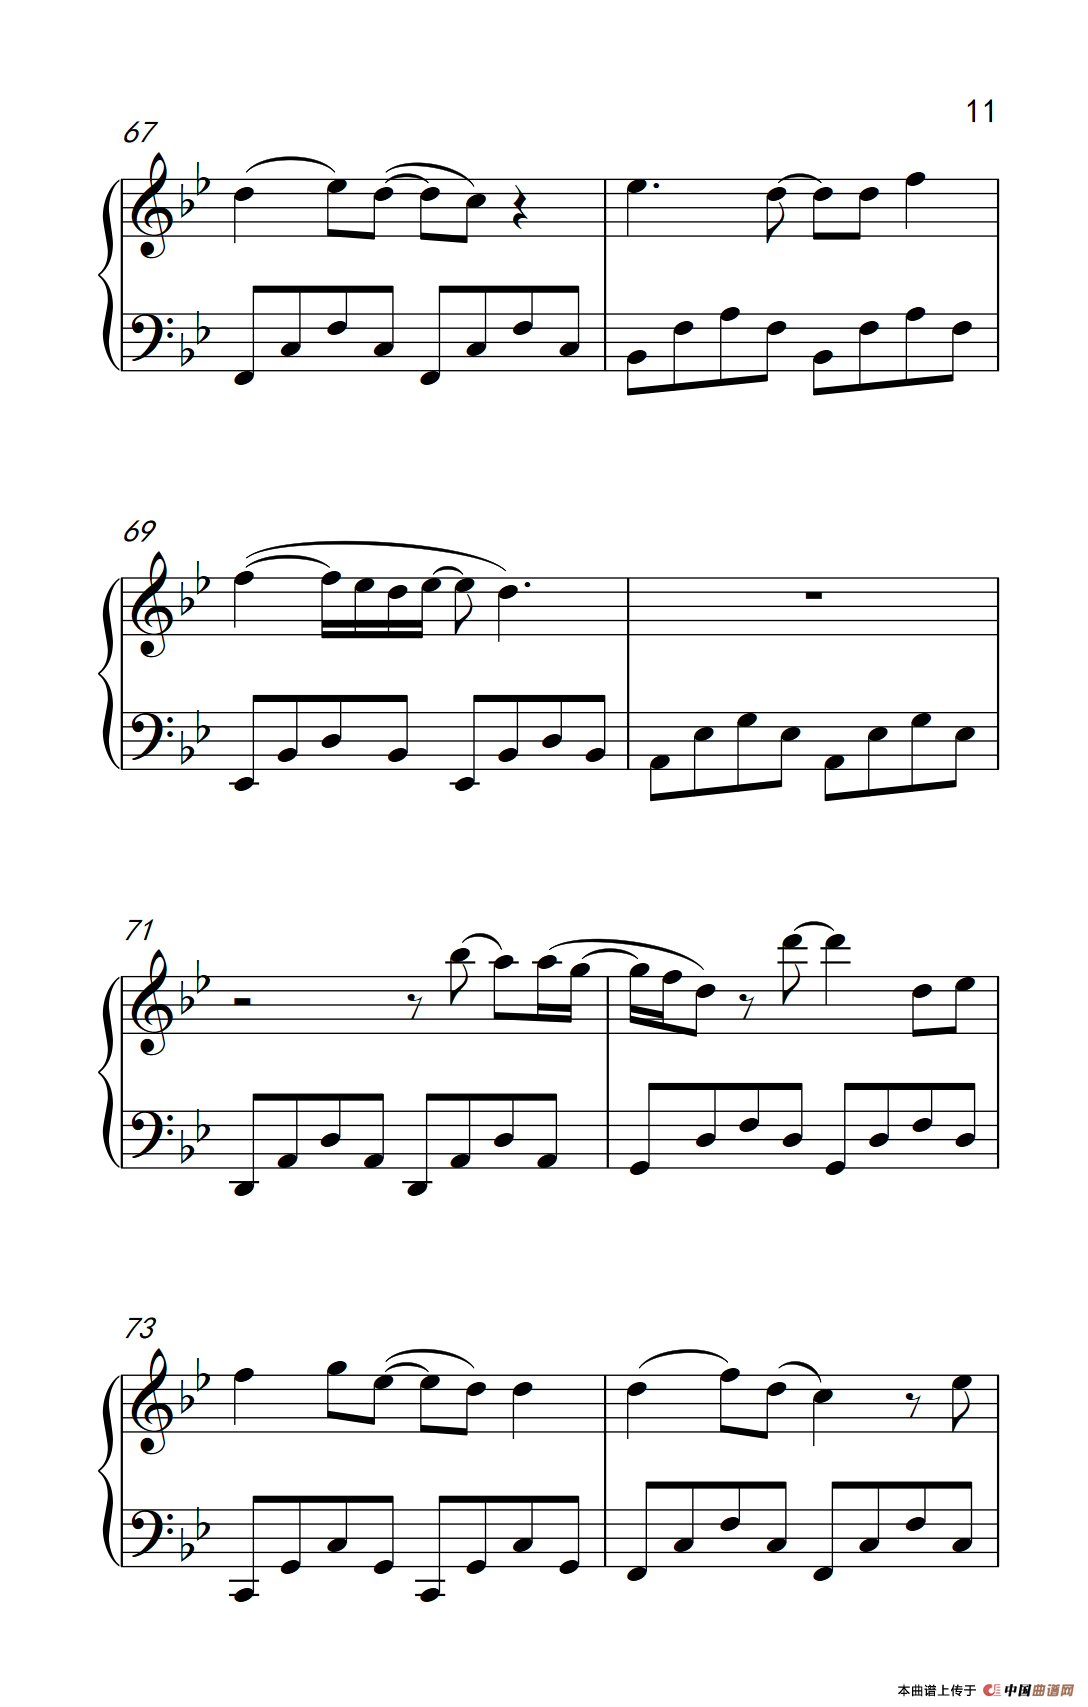 简单版《流着泪说分手》钢琴谱 - 金志文0基础钢琴简谱 - 高清谱子图片 - 钢琴简谱